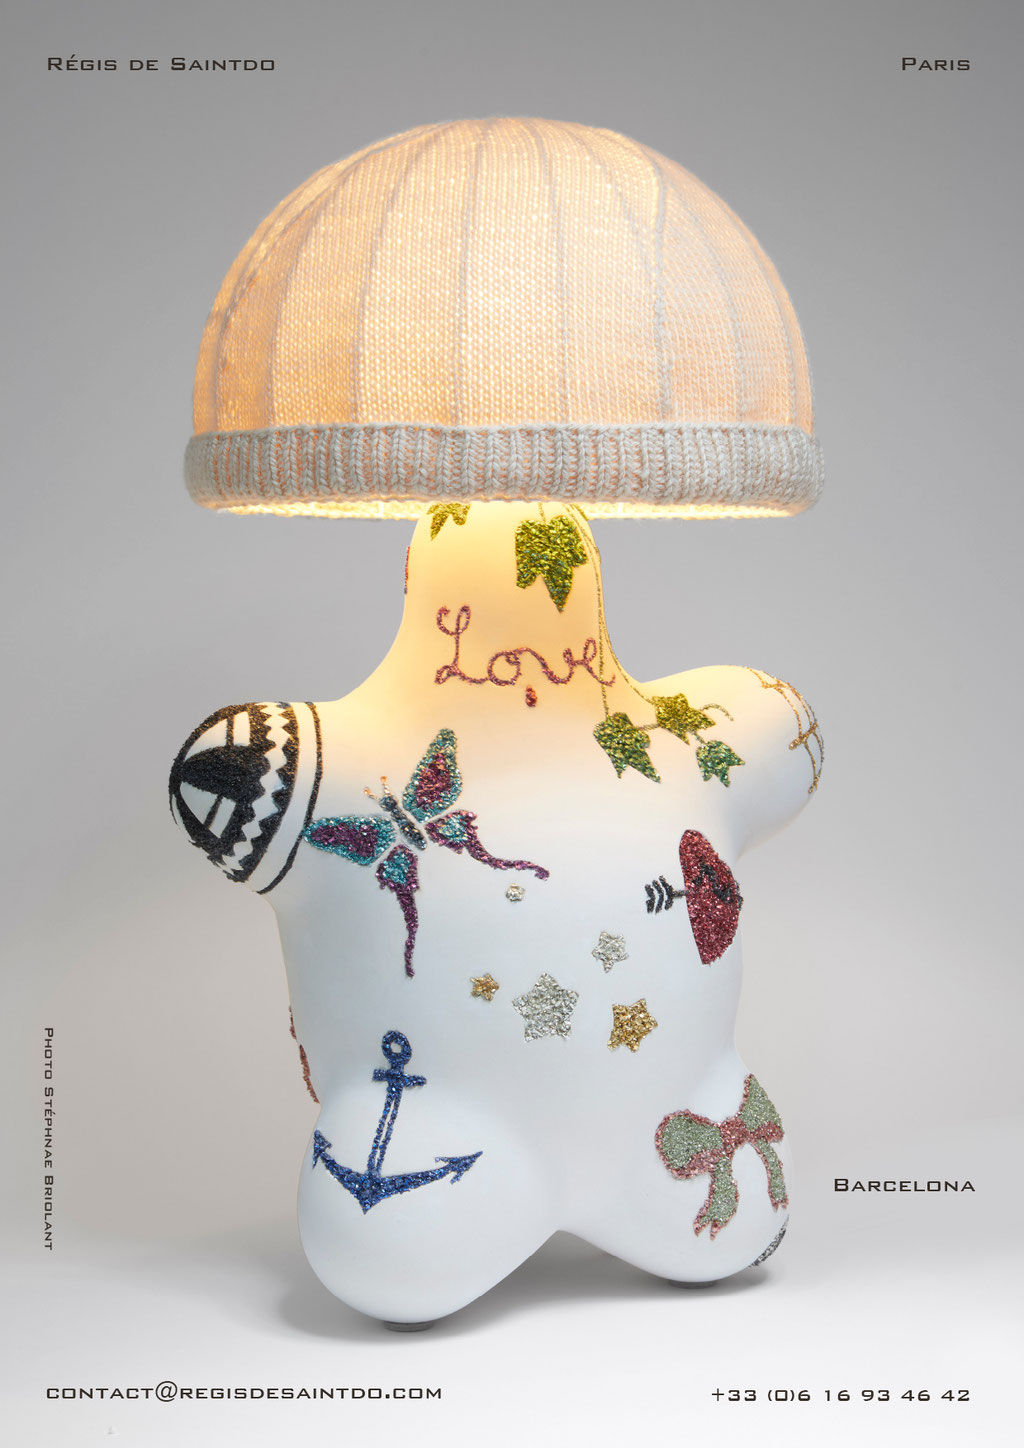 Lampe Barcelona - céramique et verre de couleur, abat-jour de laine - fait main-unique @Régis de Saintdo